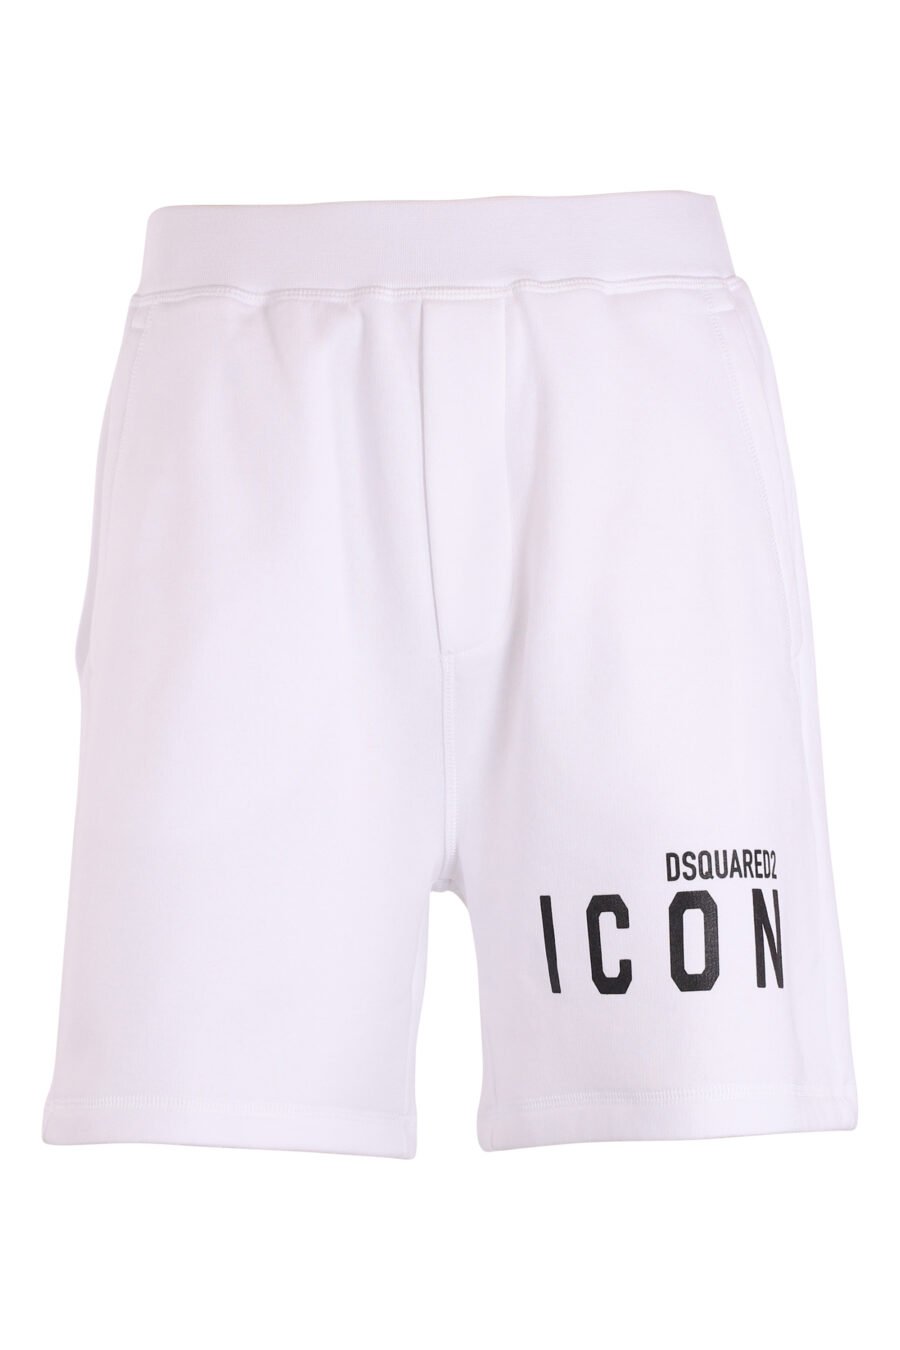 Pantalón de chándal corto blanco con doble logo lateral - IMG 8976